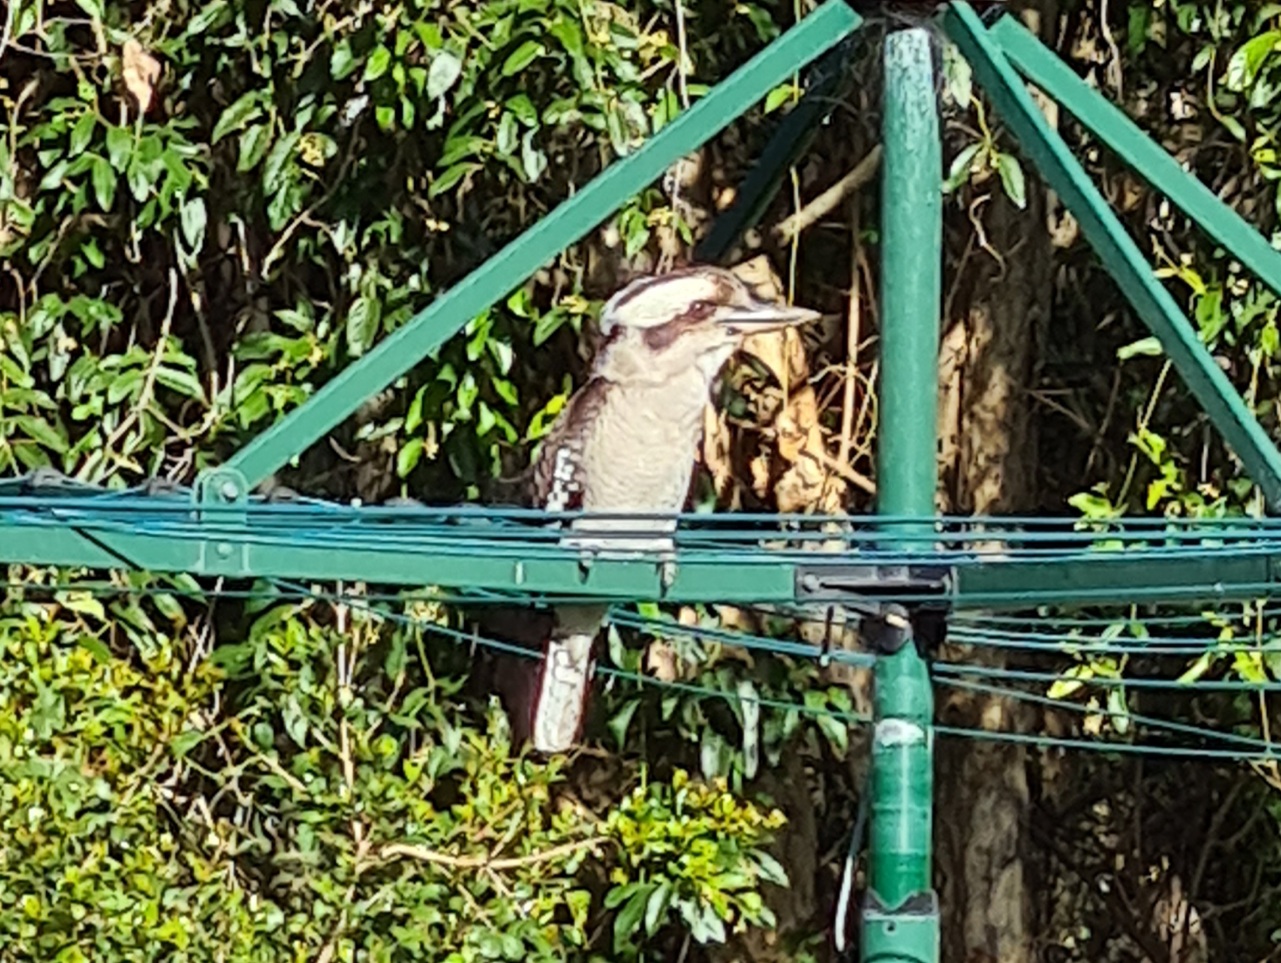 Laughing kookaburra on the clothesline